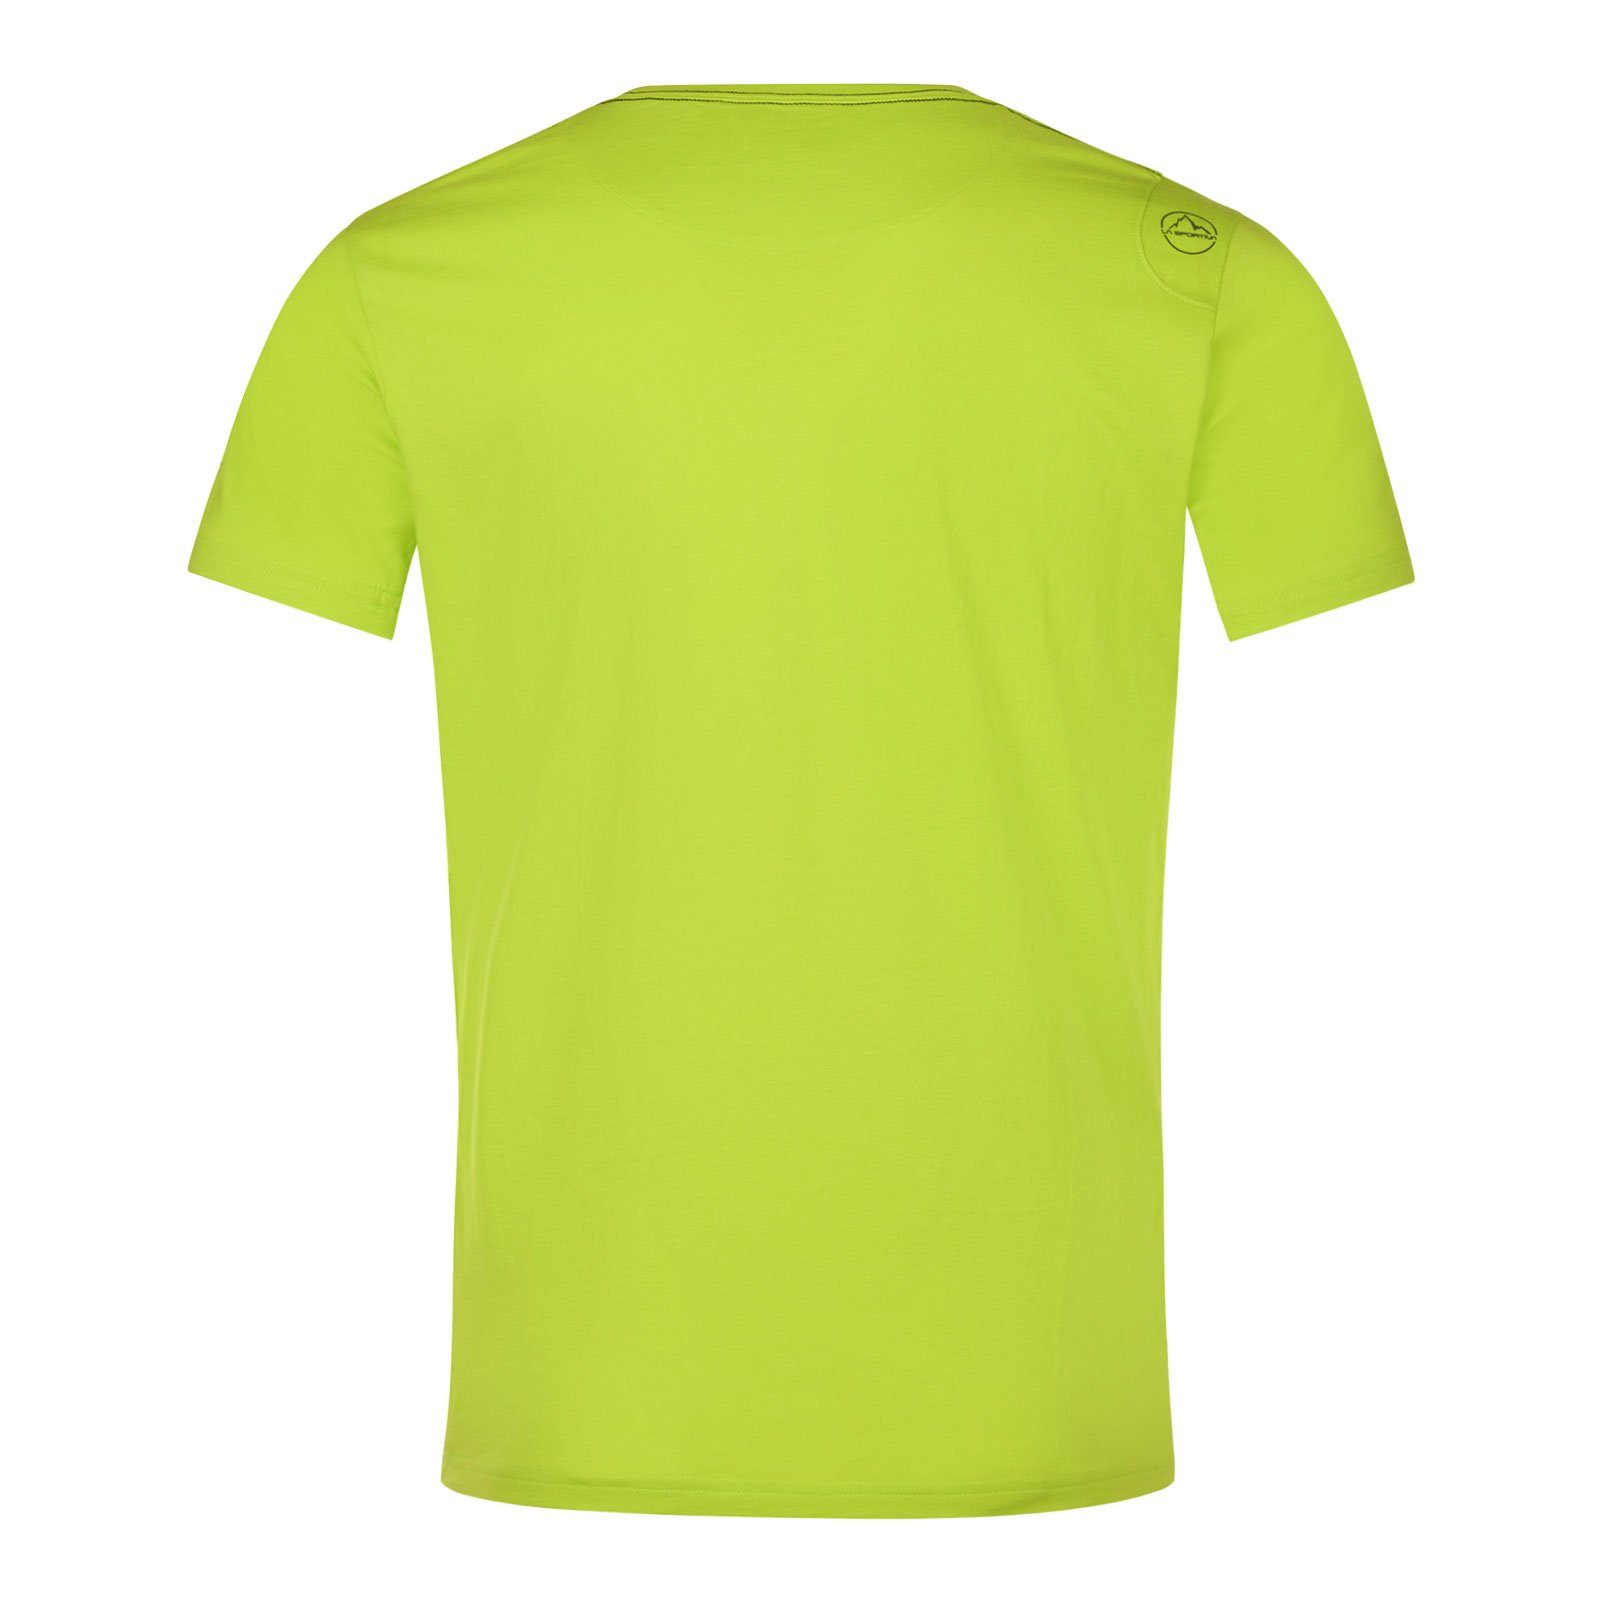 M Sportiva 729729 lime 100% punch Van Baumwolle organischer aus La T-Shirt